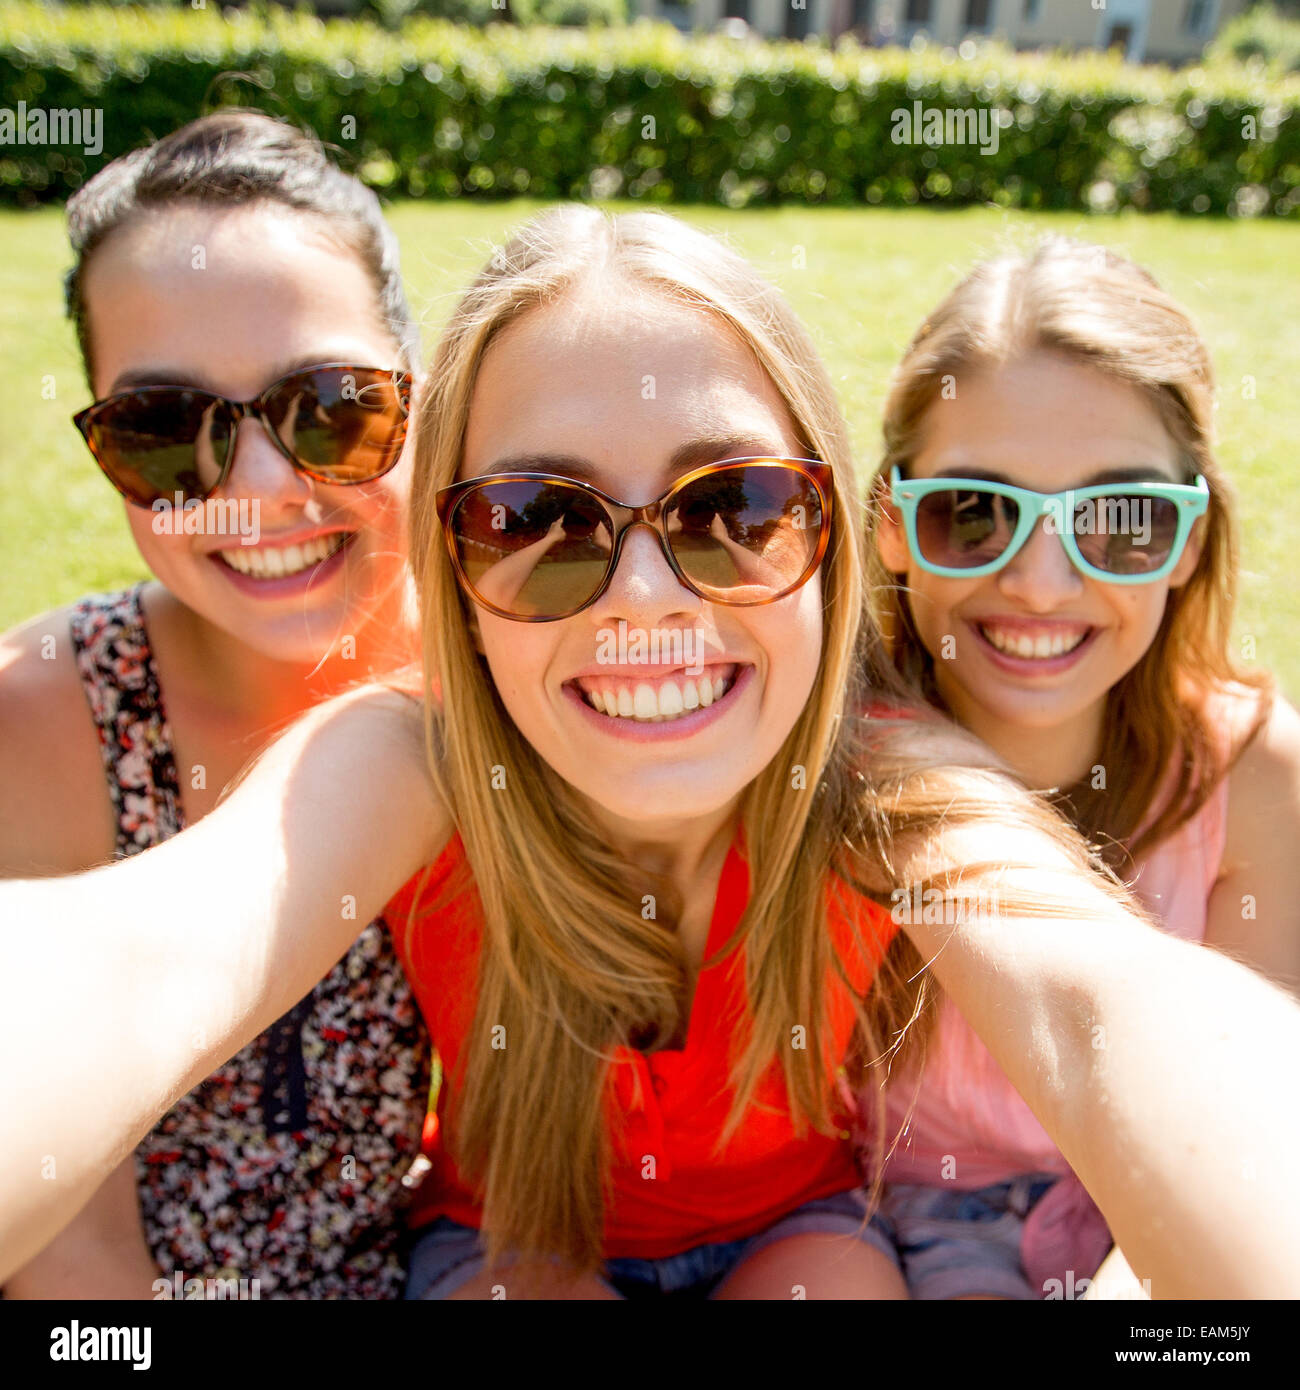 teen girl selfies group